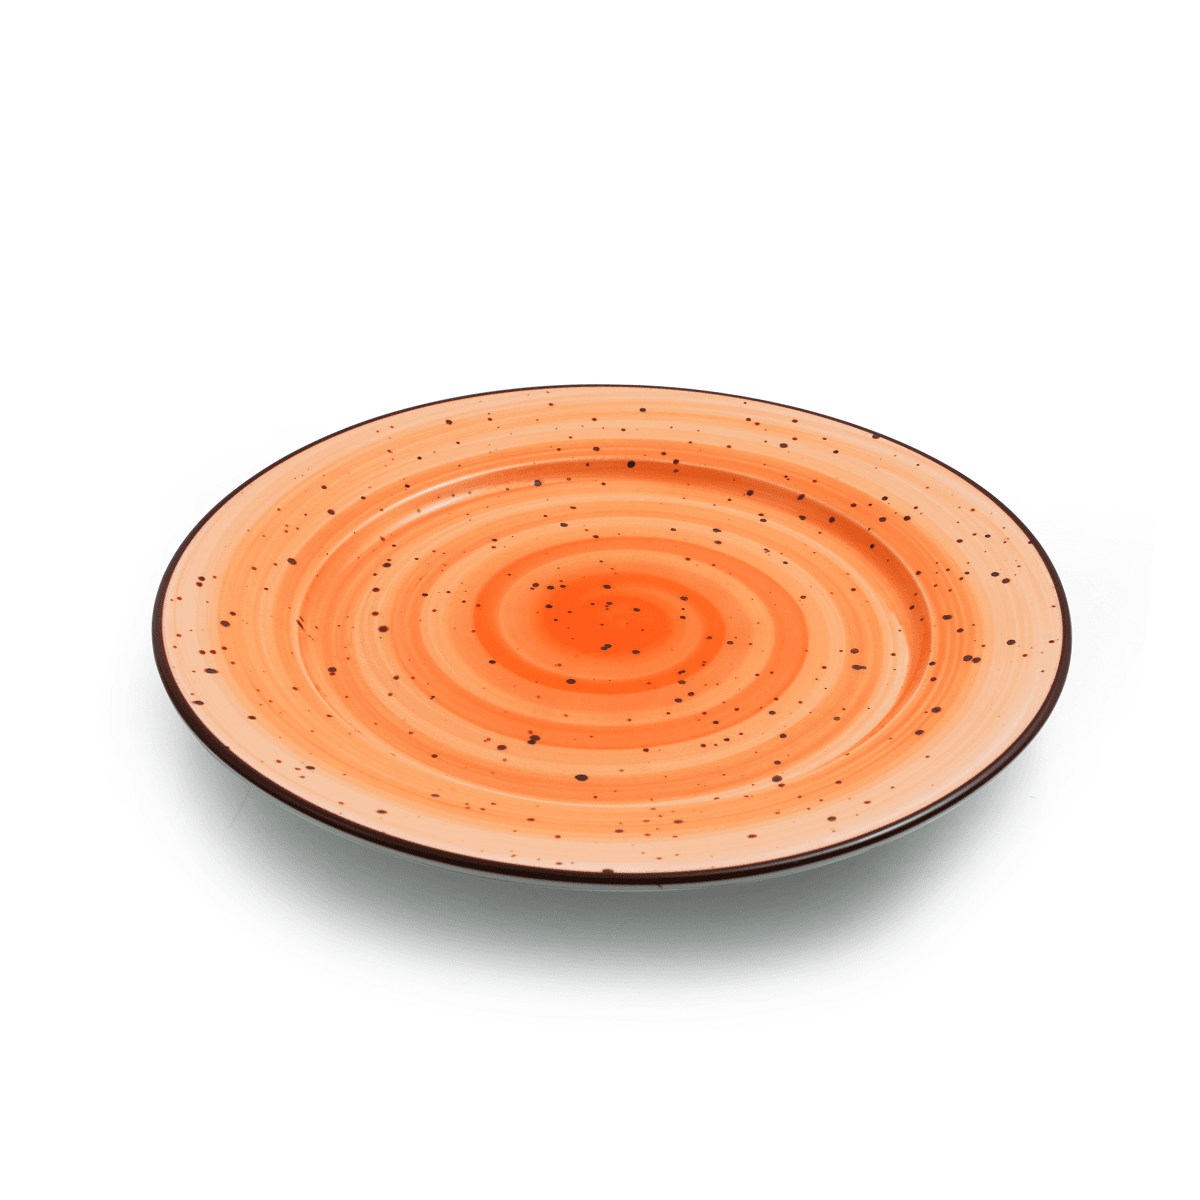 صحن تقديم بورسلان 11 إنش برتقالي بورسليتا Porceletta Glazed Porcelain Flat Plate